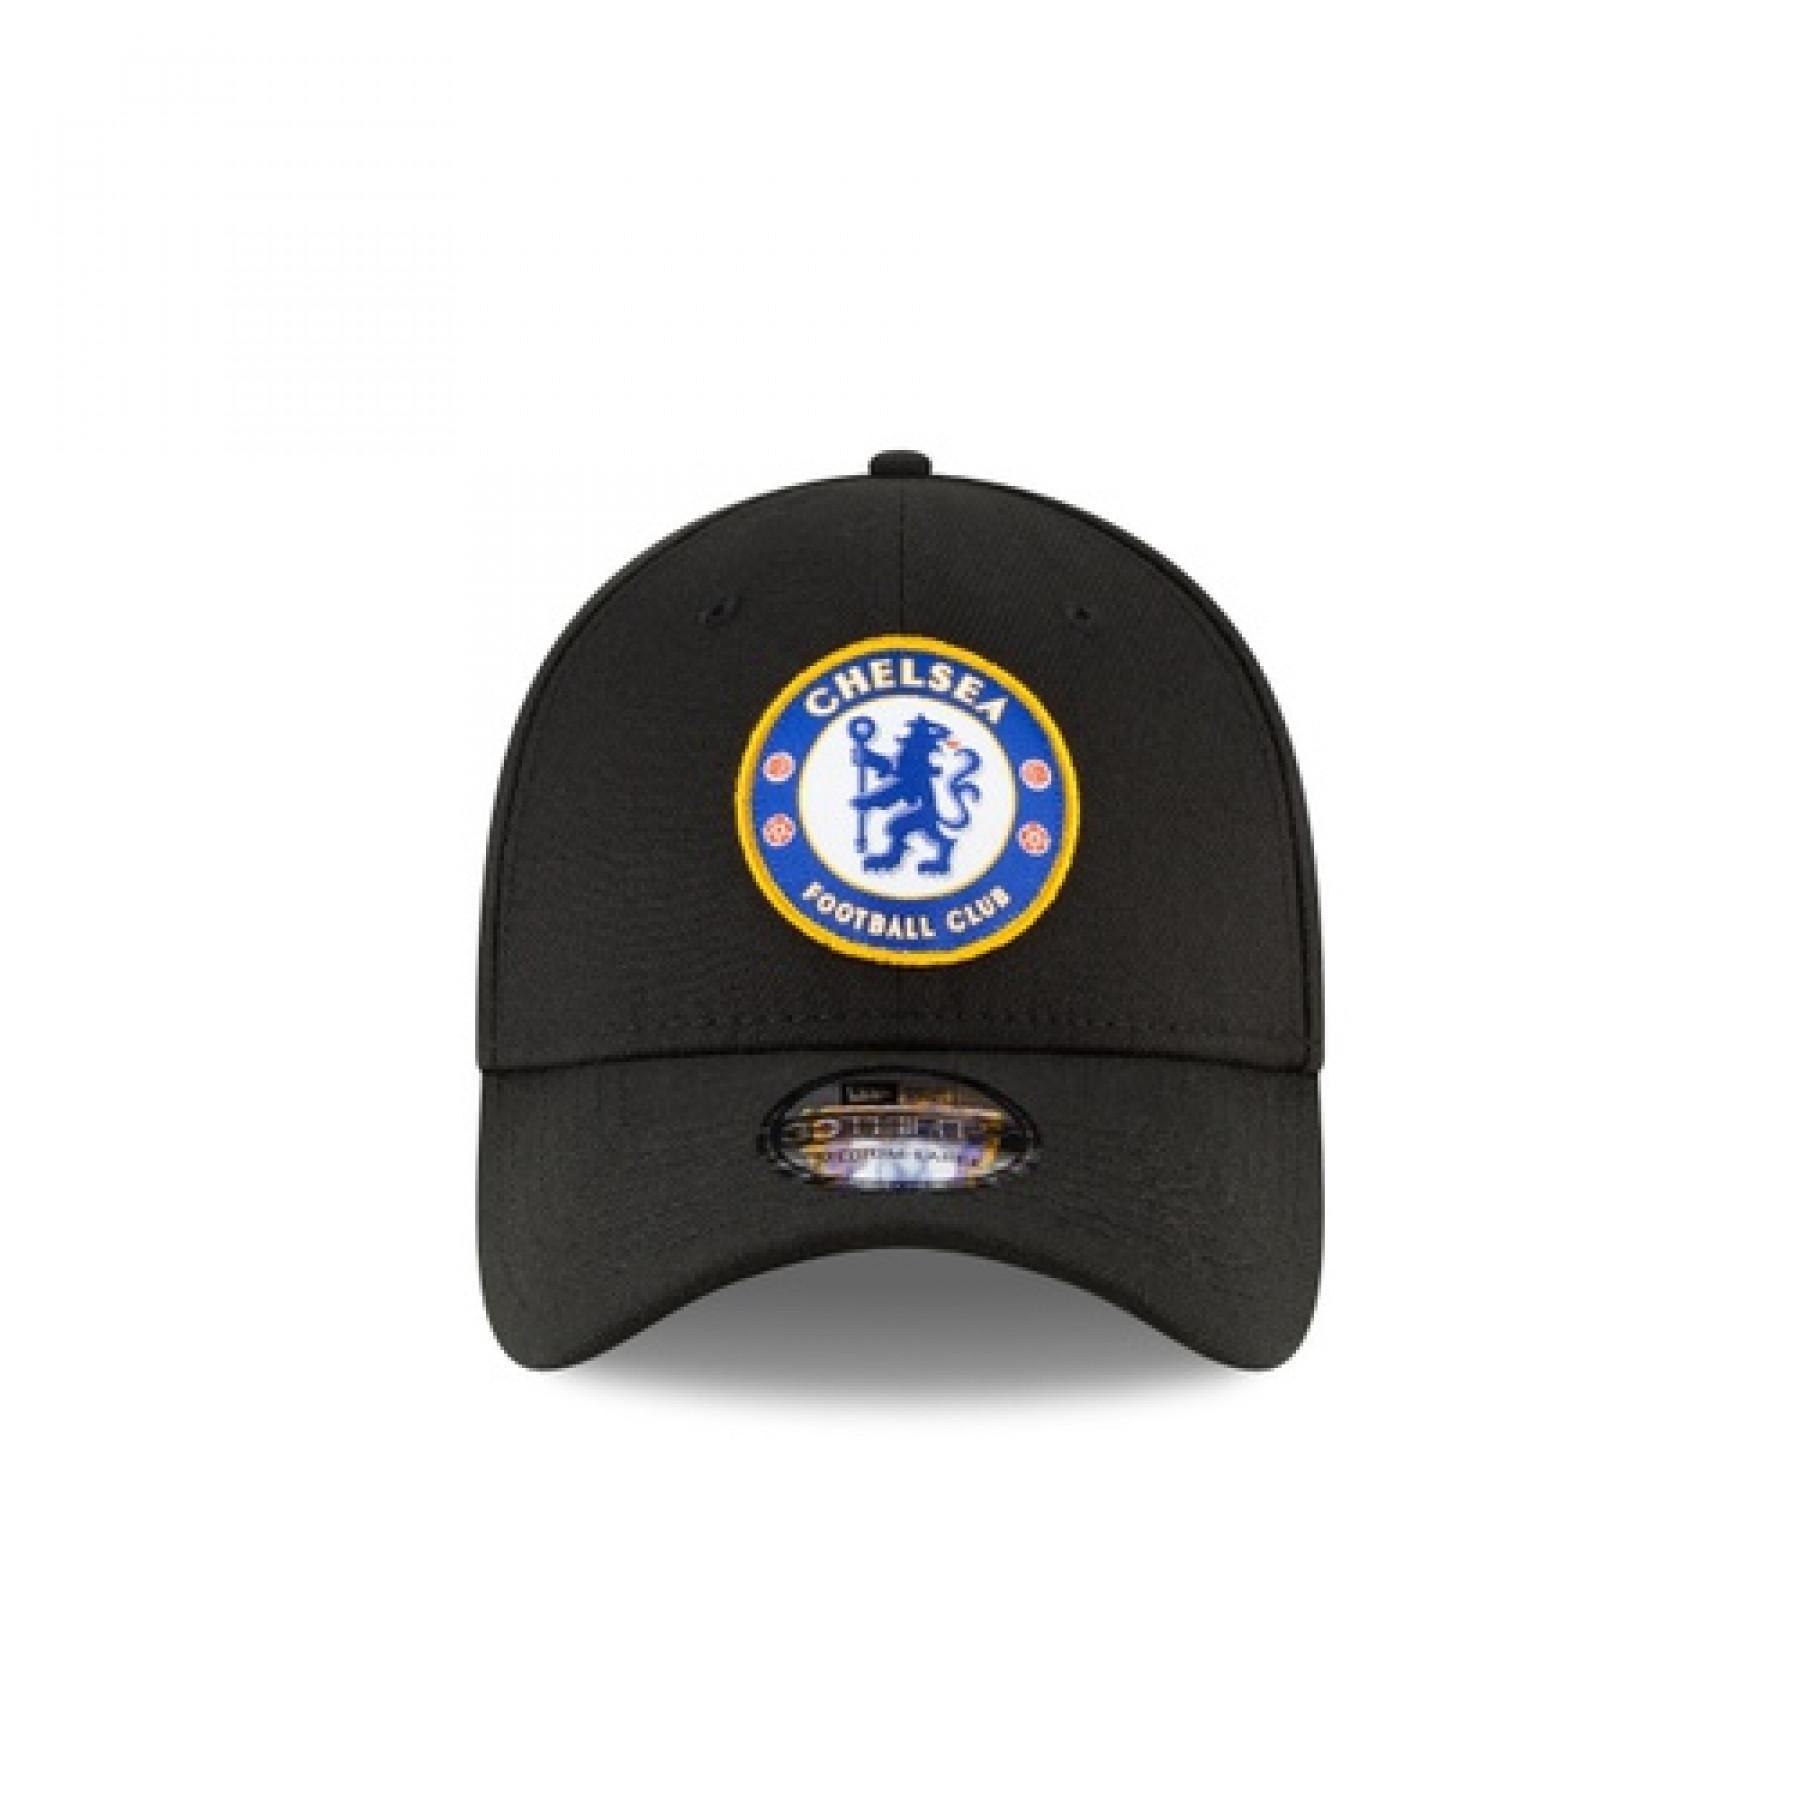 Cap New Era Rear Wordmark 3930 Chelsea FC